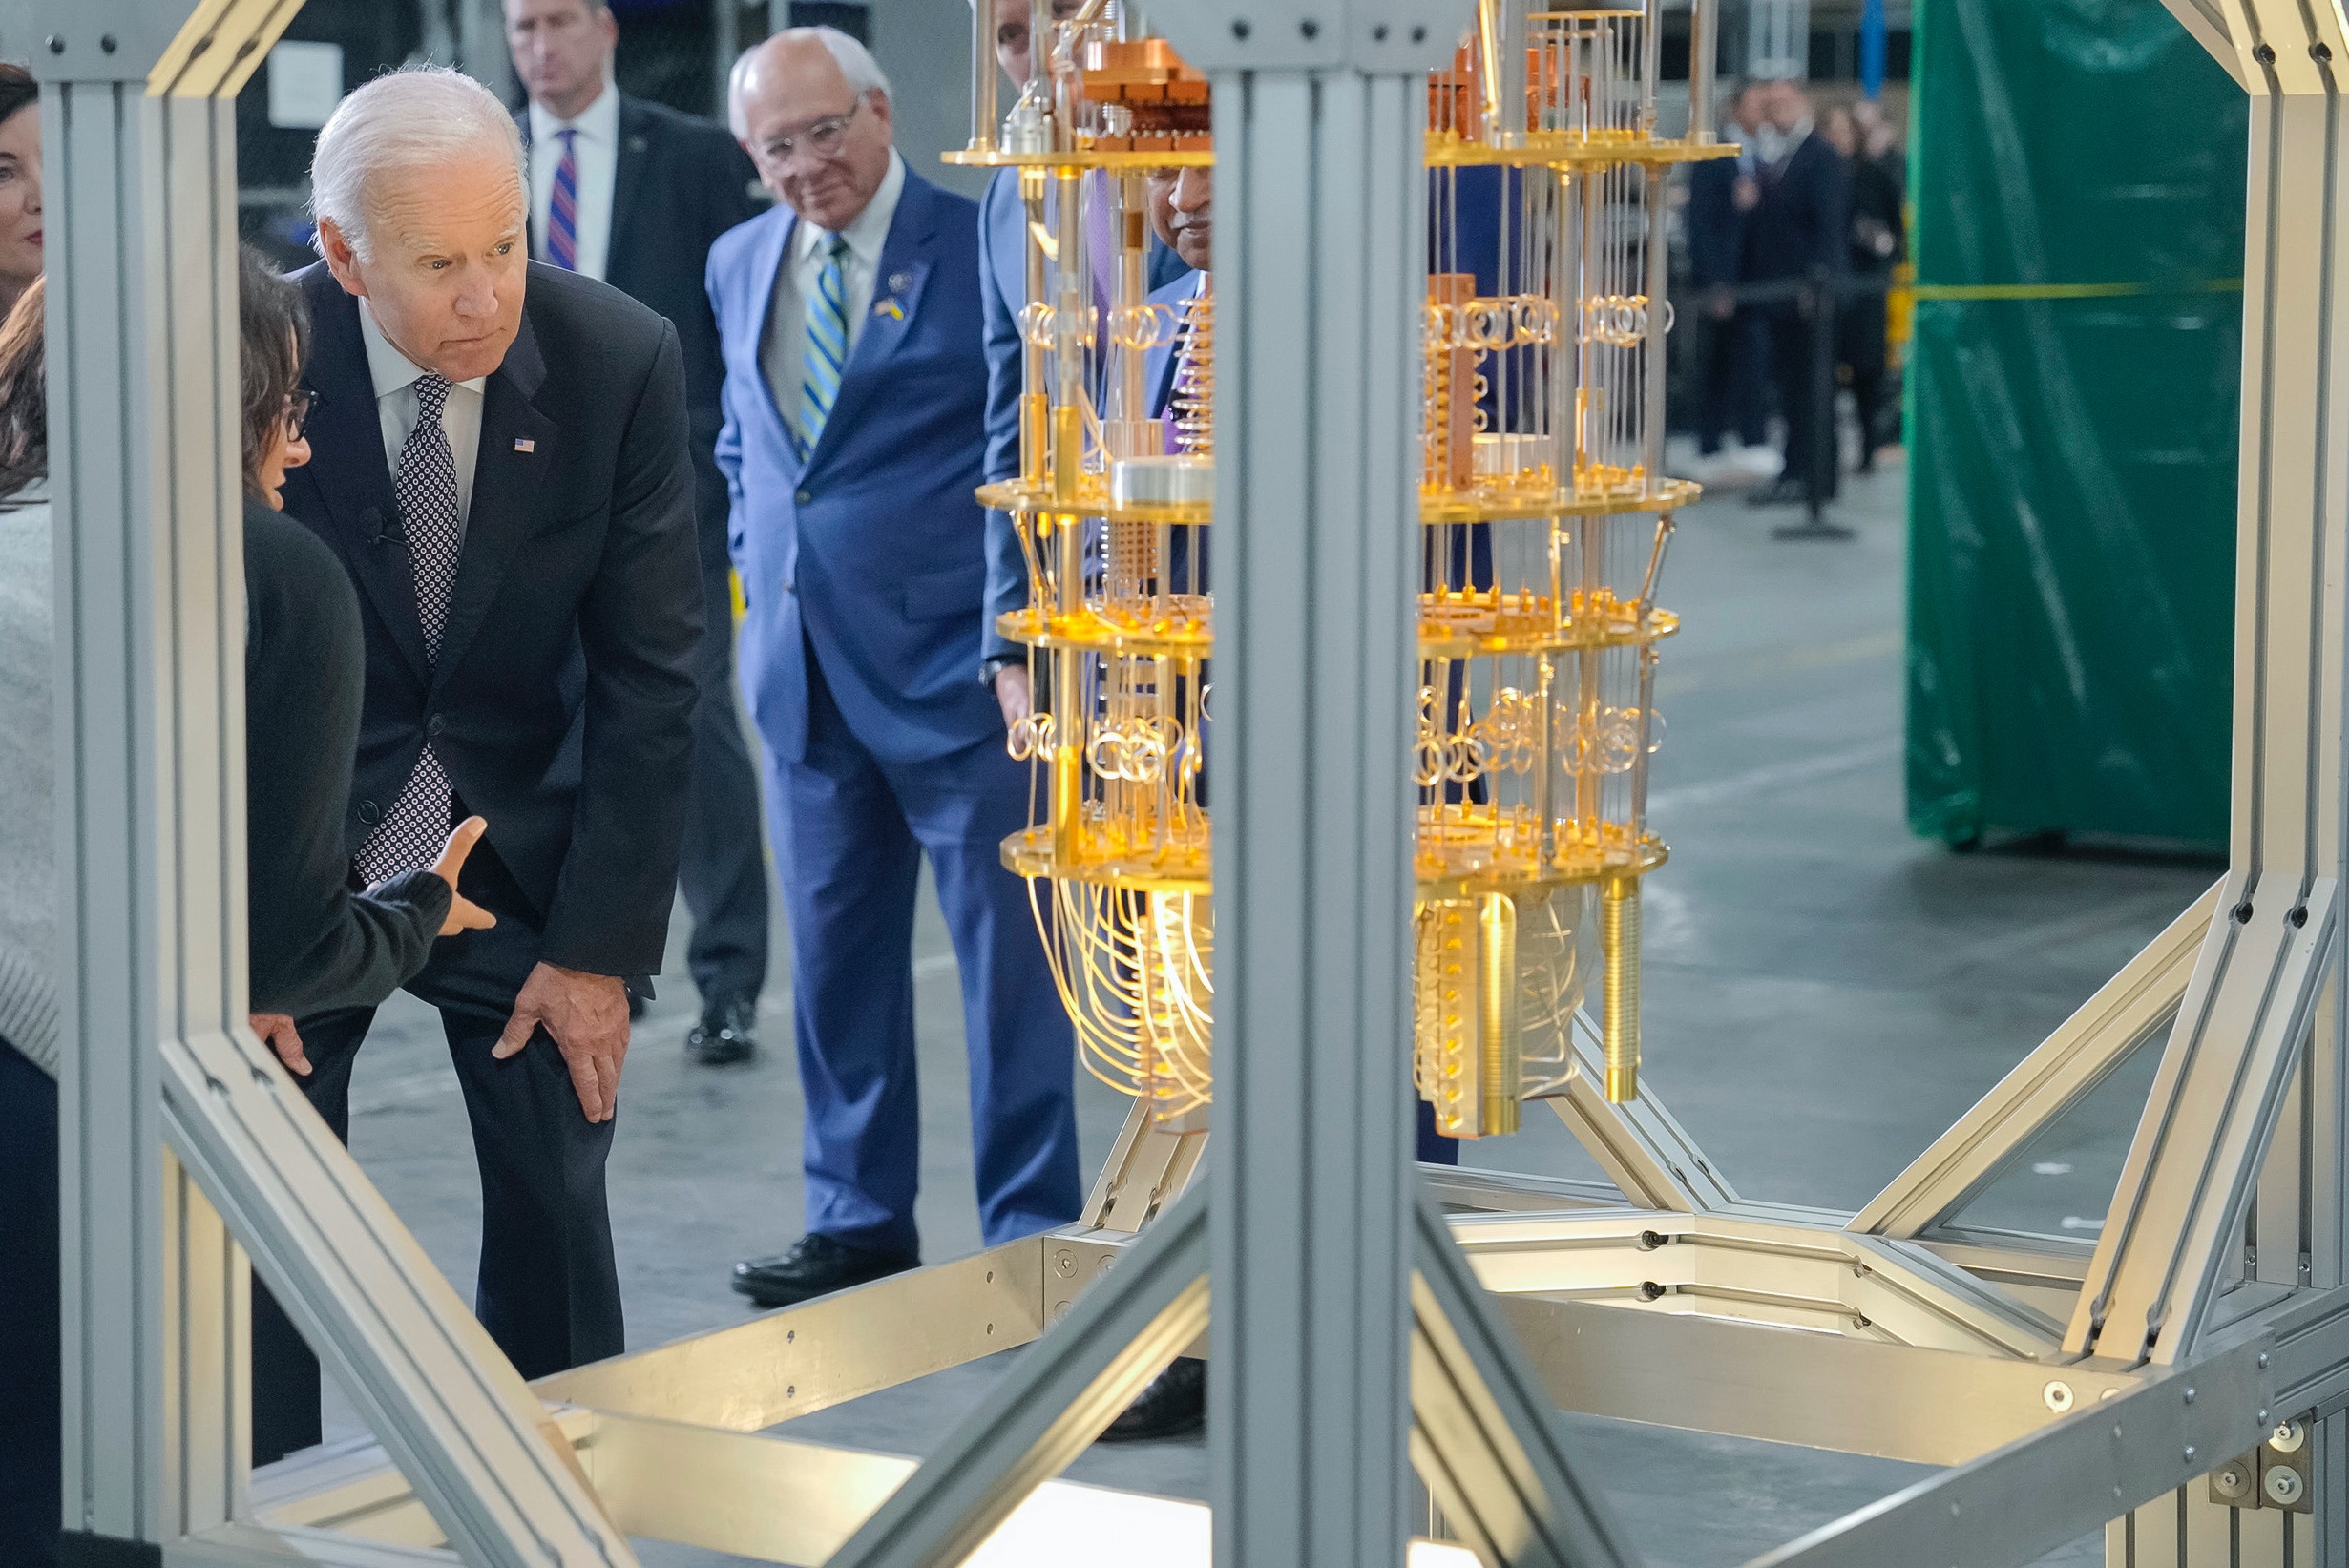 President Joe Biden tours the IBM facility in Poughkeepsie, New York